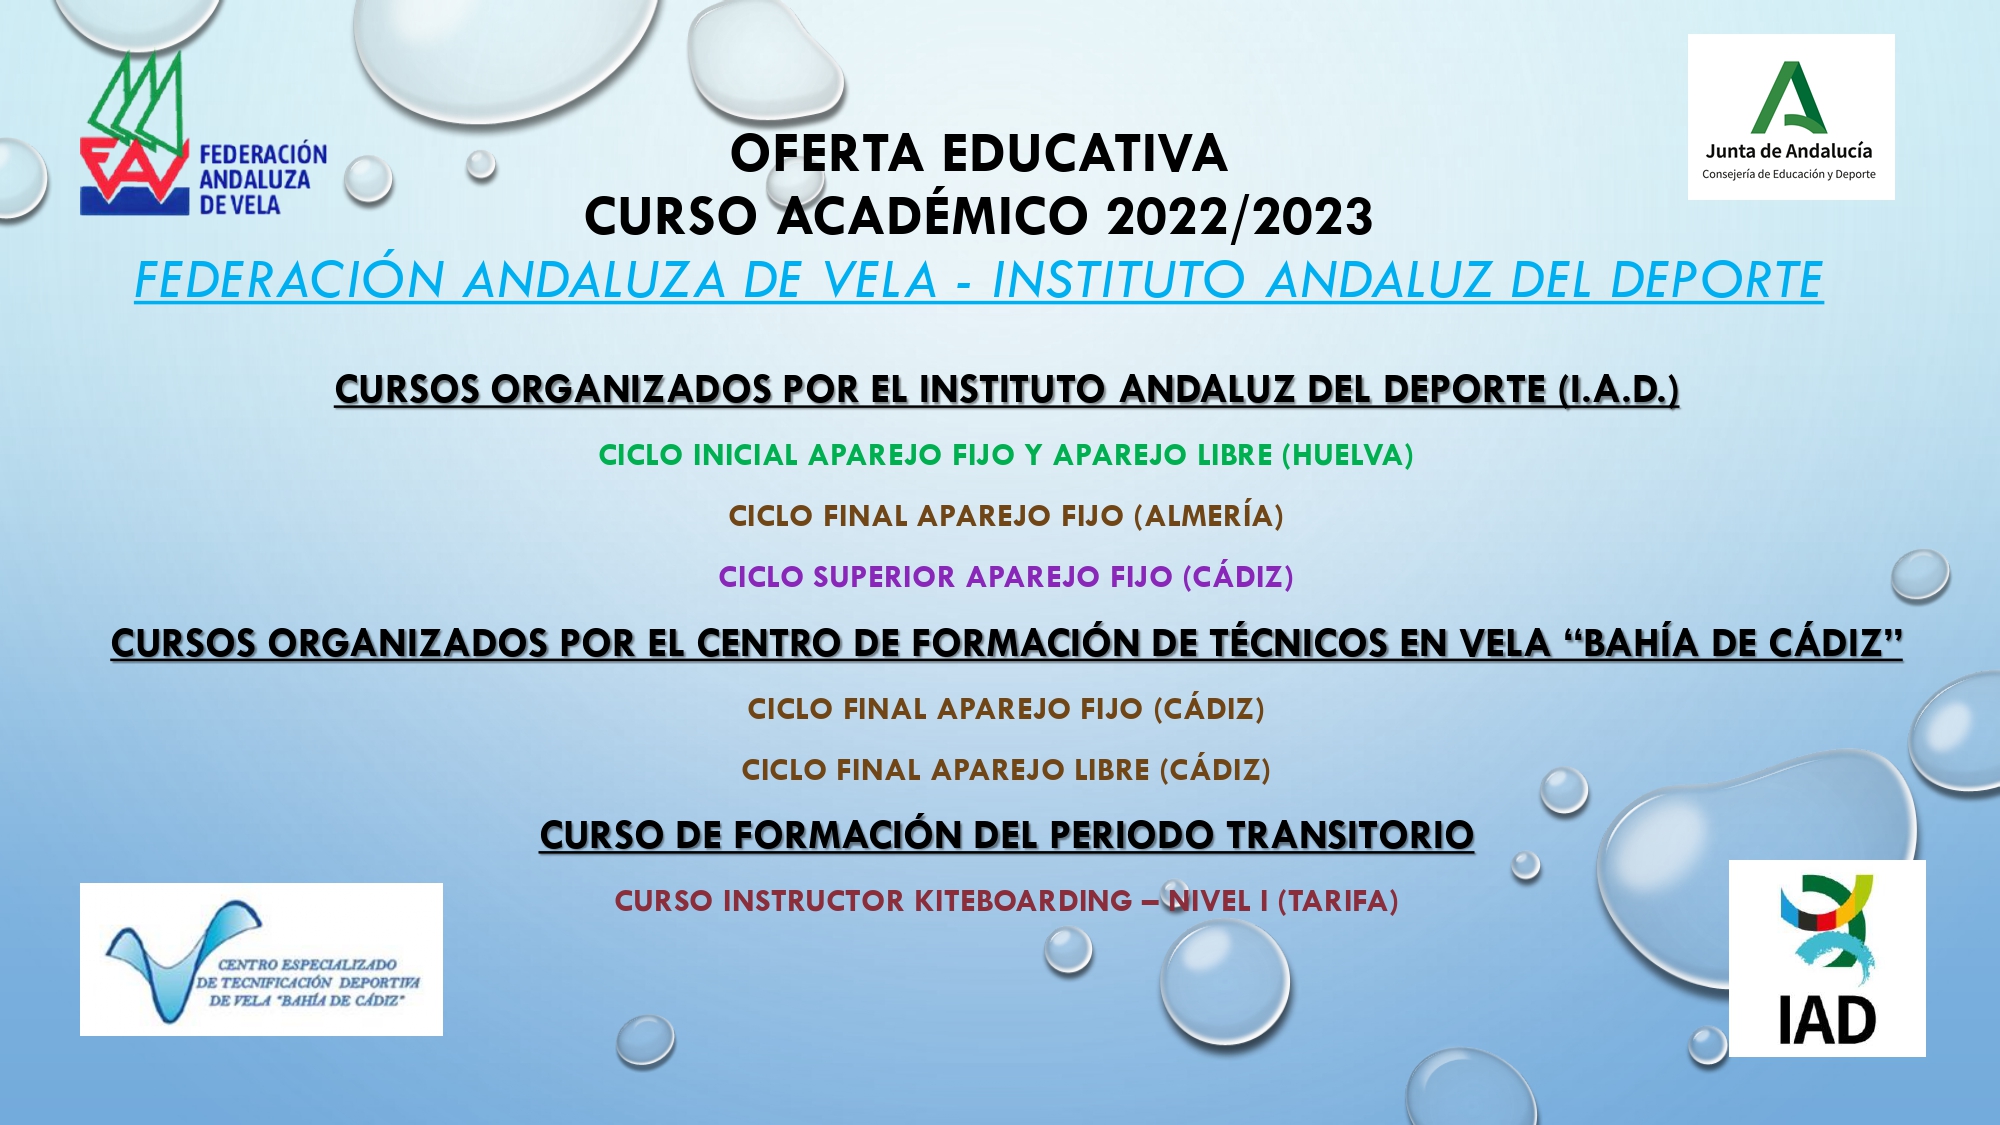 OFERTA EDUCATIVA CURSO EDRE Y KITE 2022/2023